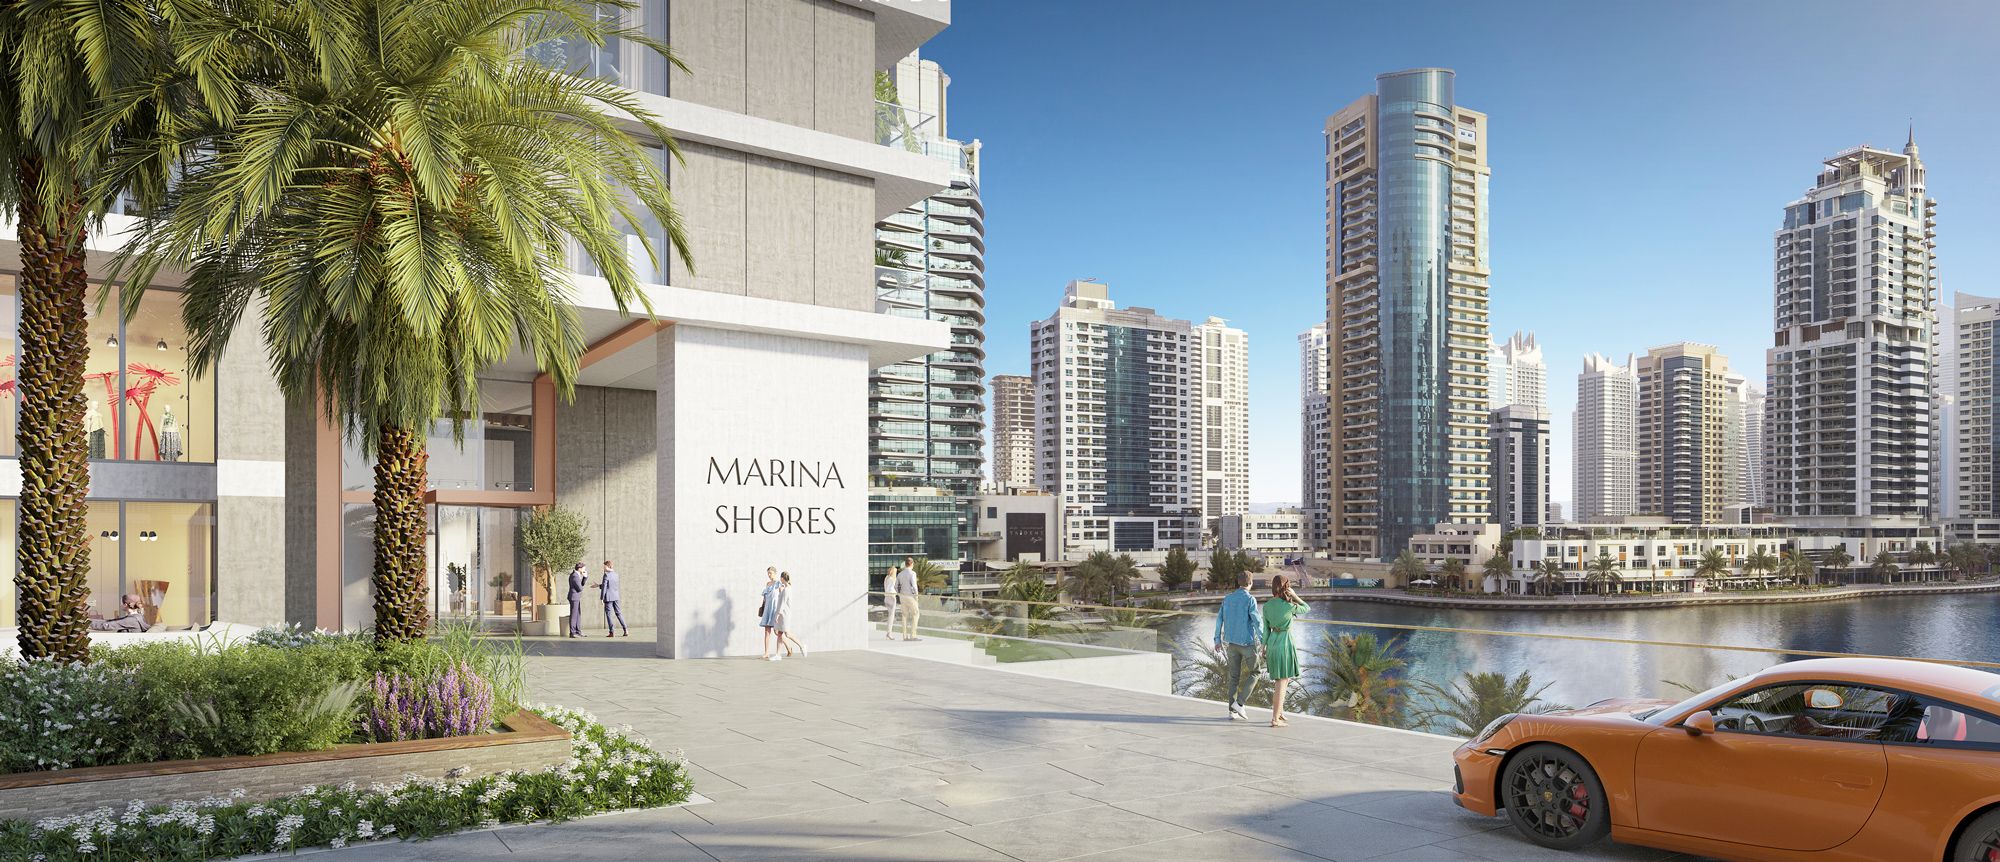 Marina Shores - Limitless Valley - Real Estate - Dubai